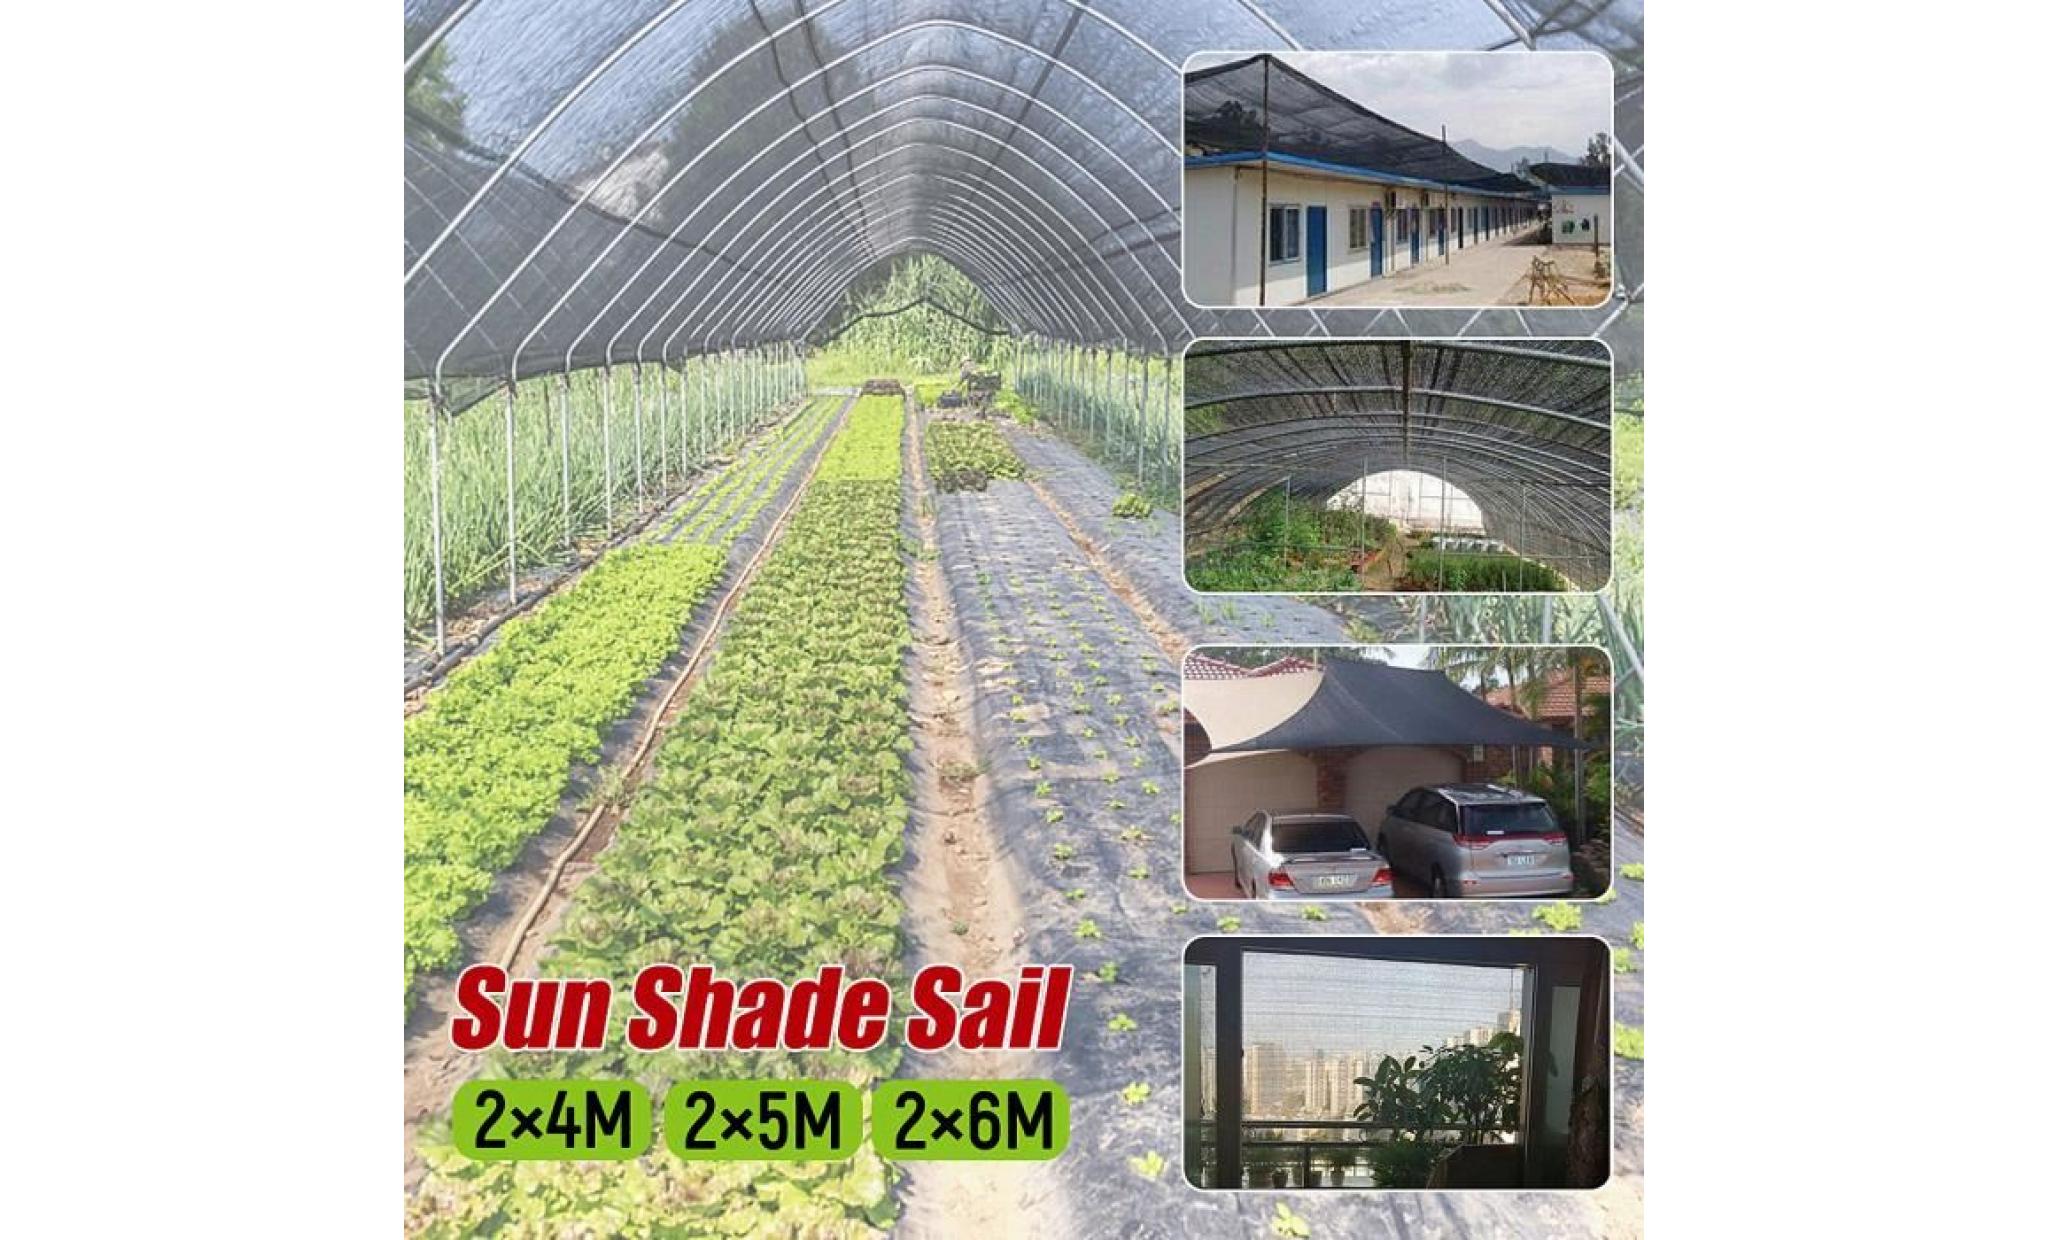 neufu voile d'ombrage protection anti uv solaire toile tendue parasol jardin serre 2x4m pas cher